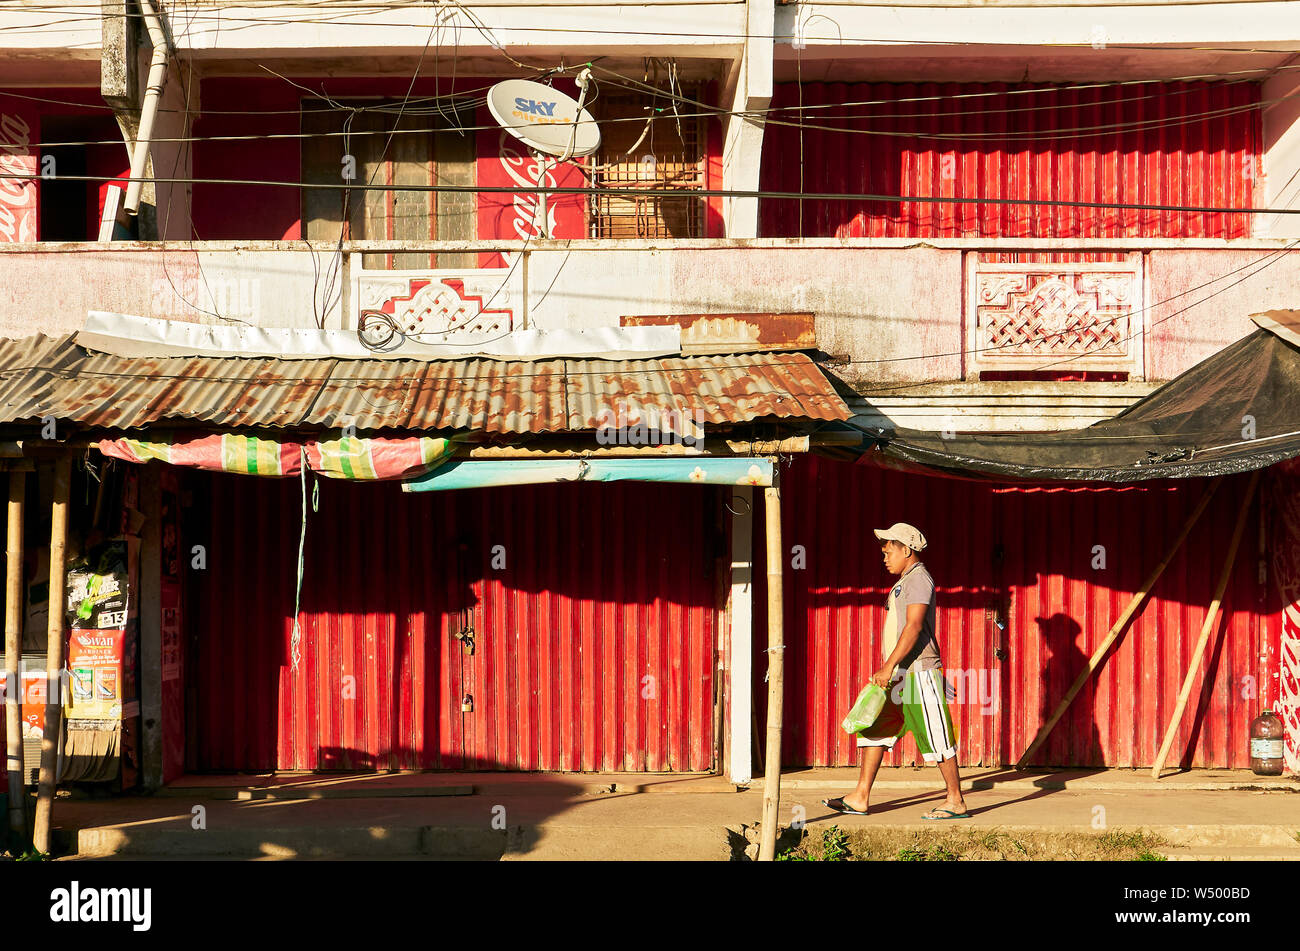 Cuartero, province de Capiz, Philippines : Jeune homme marcher devant les magasins, fermé avec portes pliantes métal rouge, en fin d'après-midi Banque D'Images